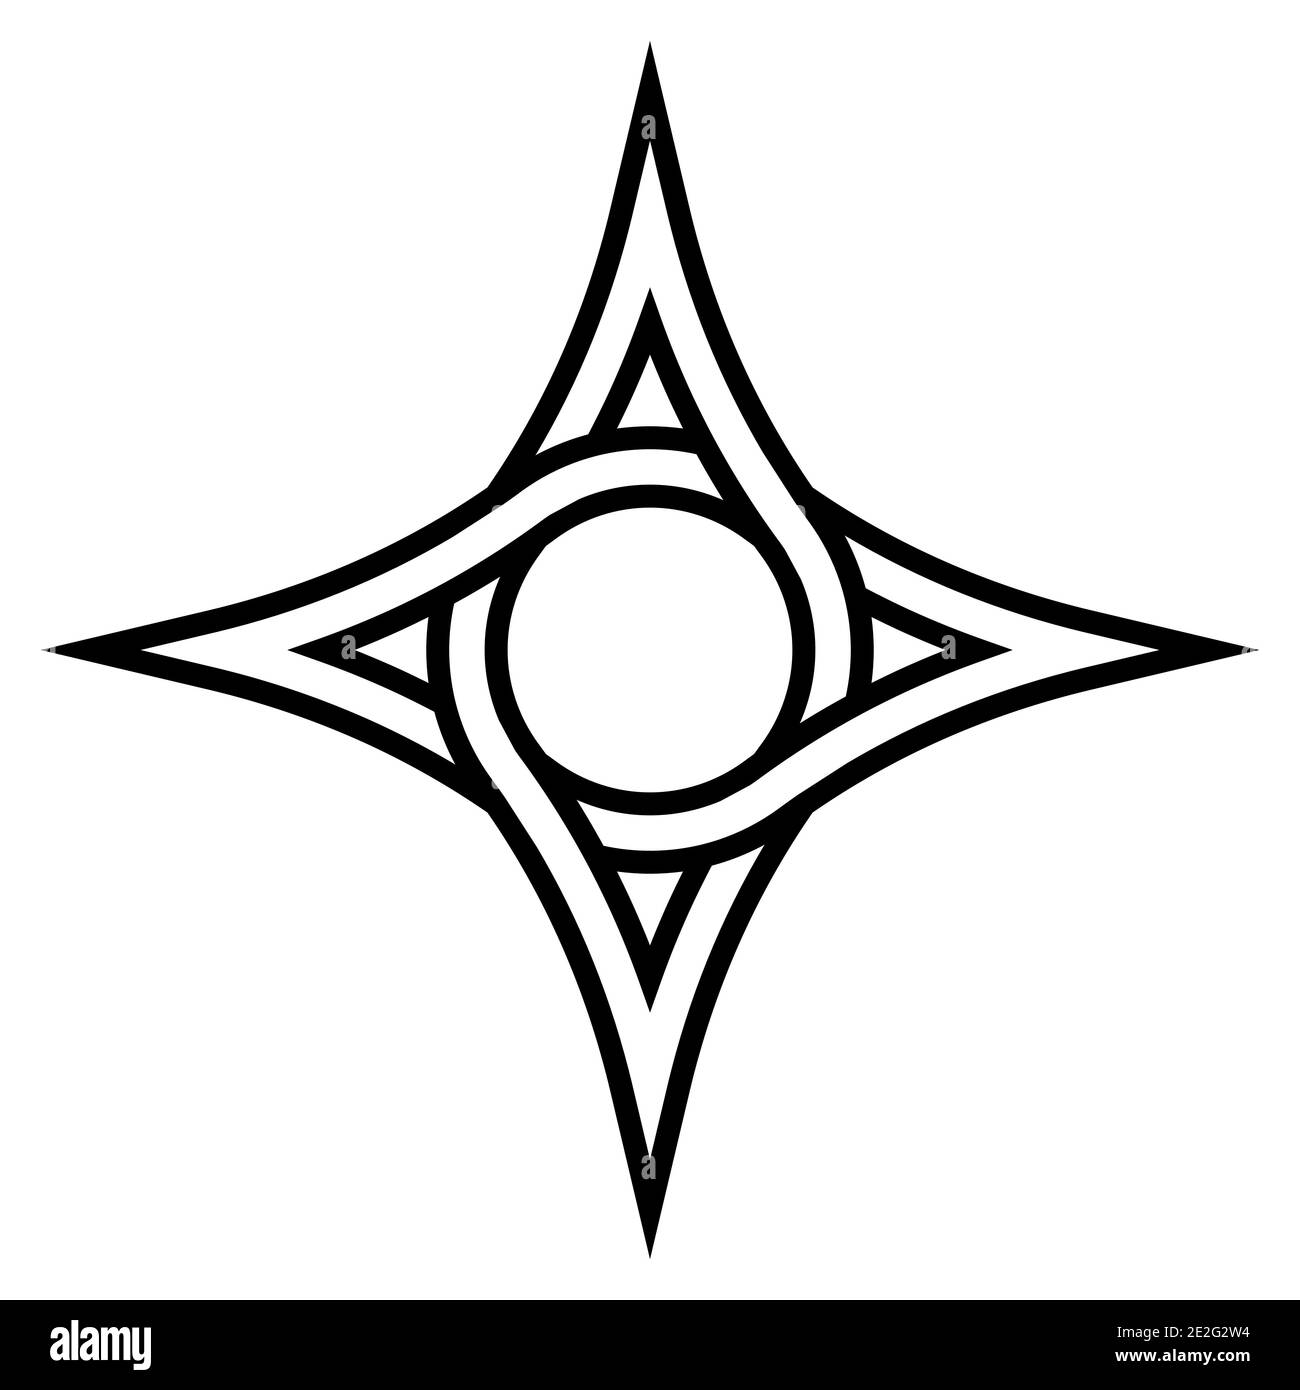 Geometrisches Logo vier spitzen Stern mit einem Kreis im Inneren, Vektor-Symbol der Zirkulation Fonds, Zeichen der Verflechtung Stock Vektor